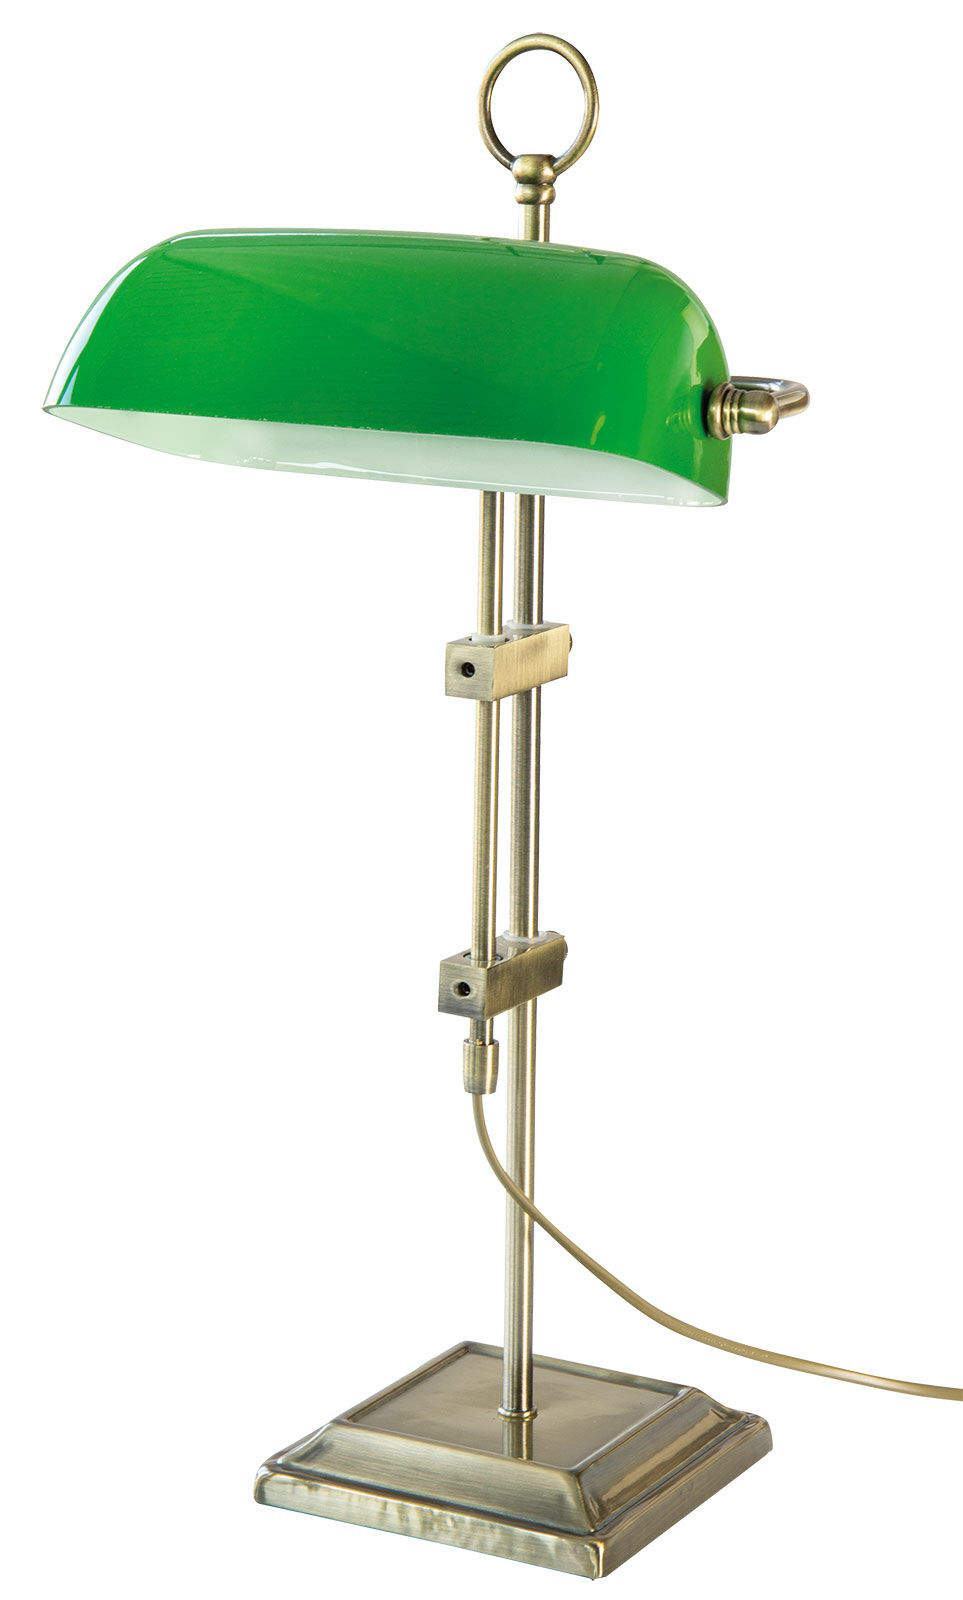 Lampe Art Nouveau / Lampe de banquier "Emeralite"